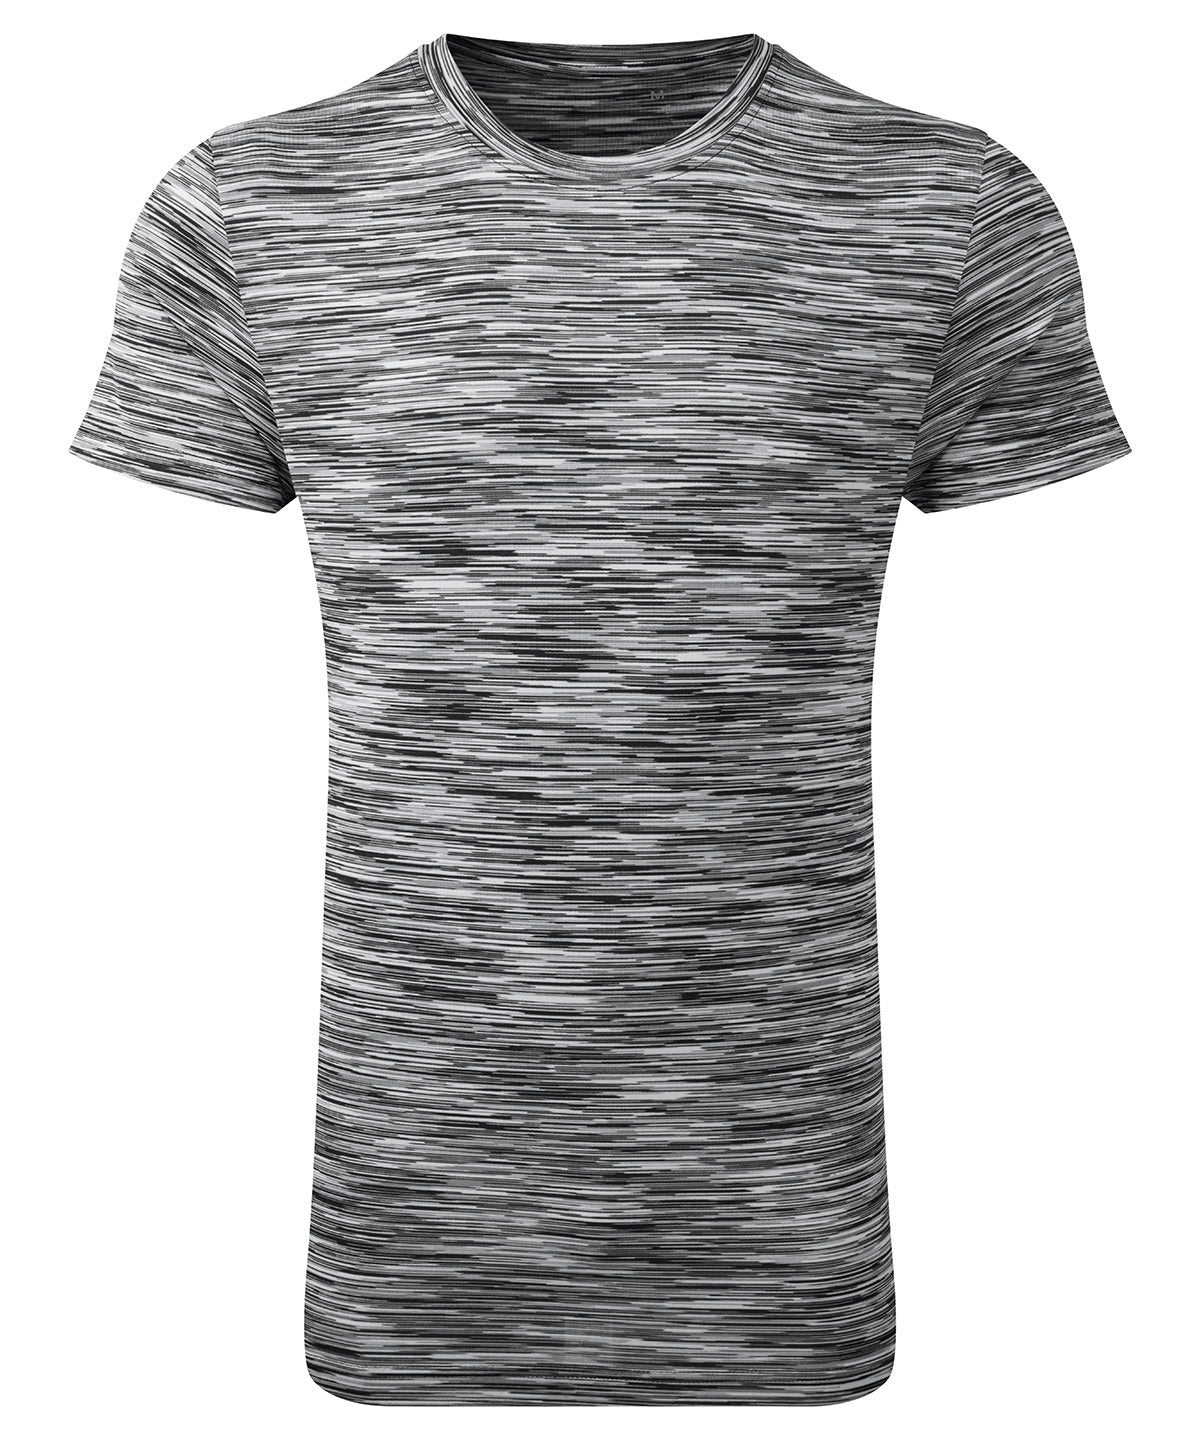 TriDri® space dye performance t-shirt | Black/Grey